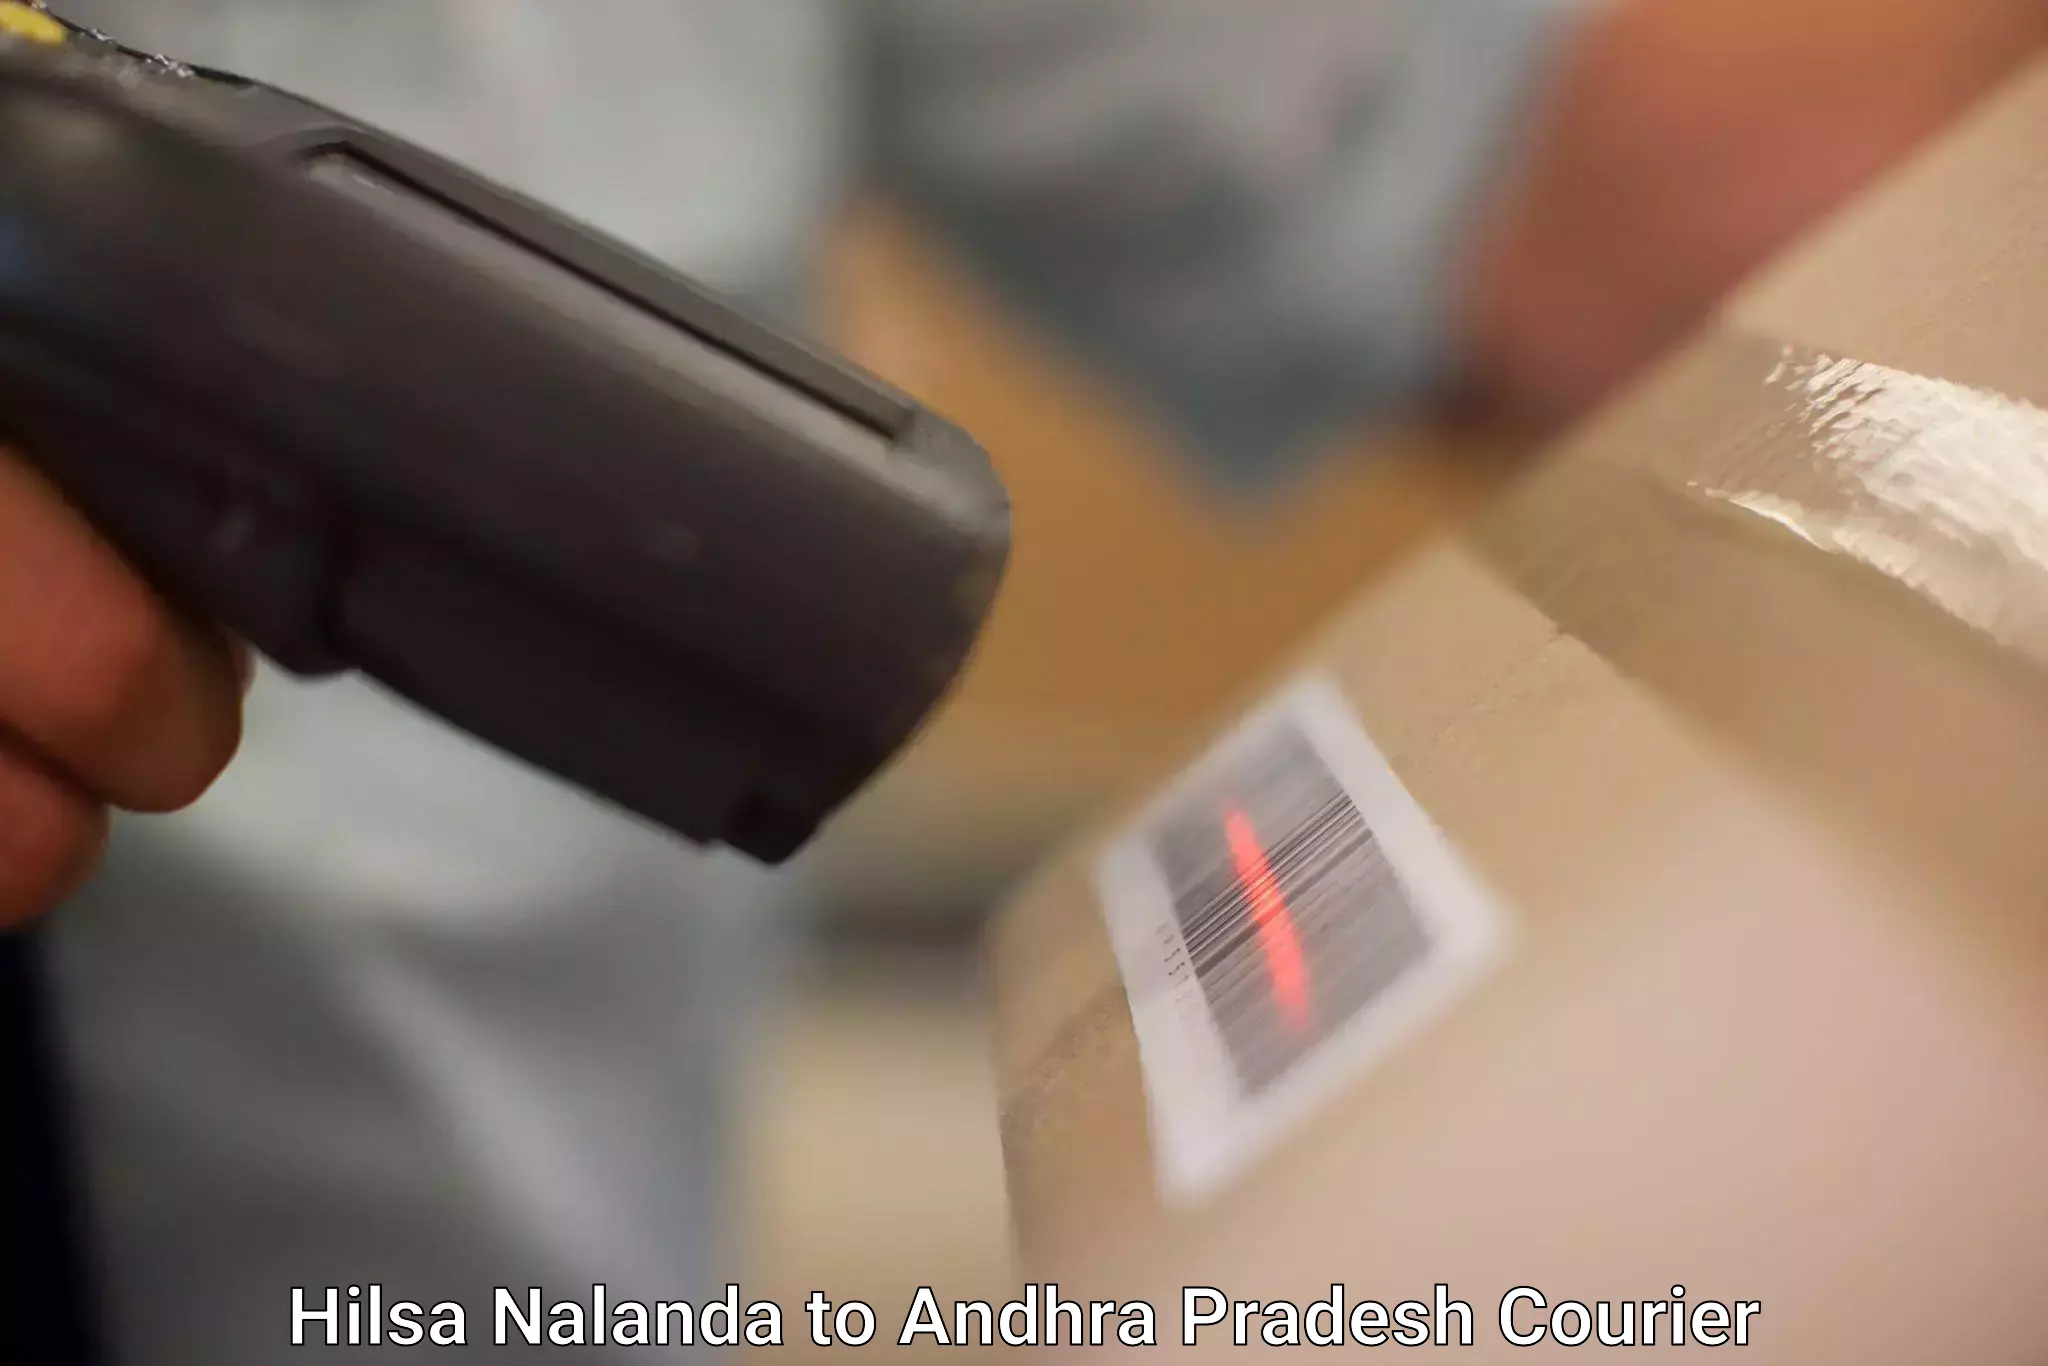 Courier service comparison in Hilsa Nalanda to Mudigubba